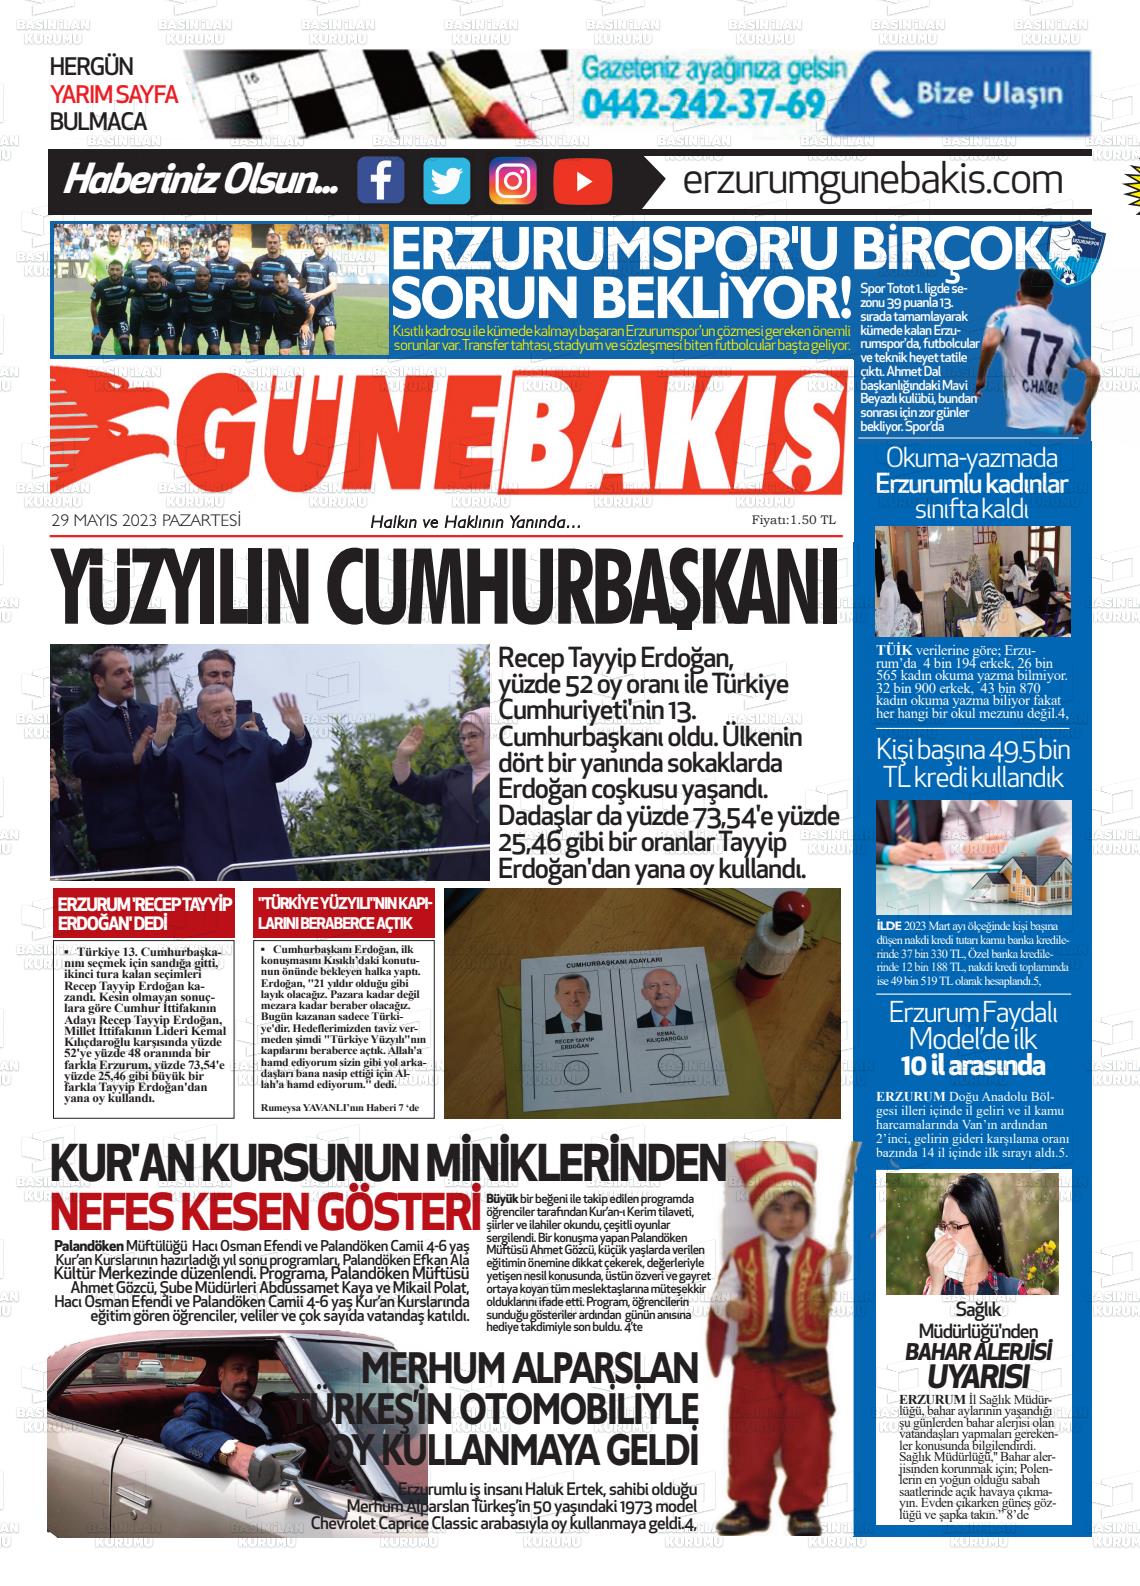 29 Mayıs 2023 Erzurum Günebakış Gazete Manşeti